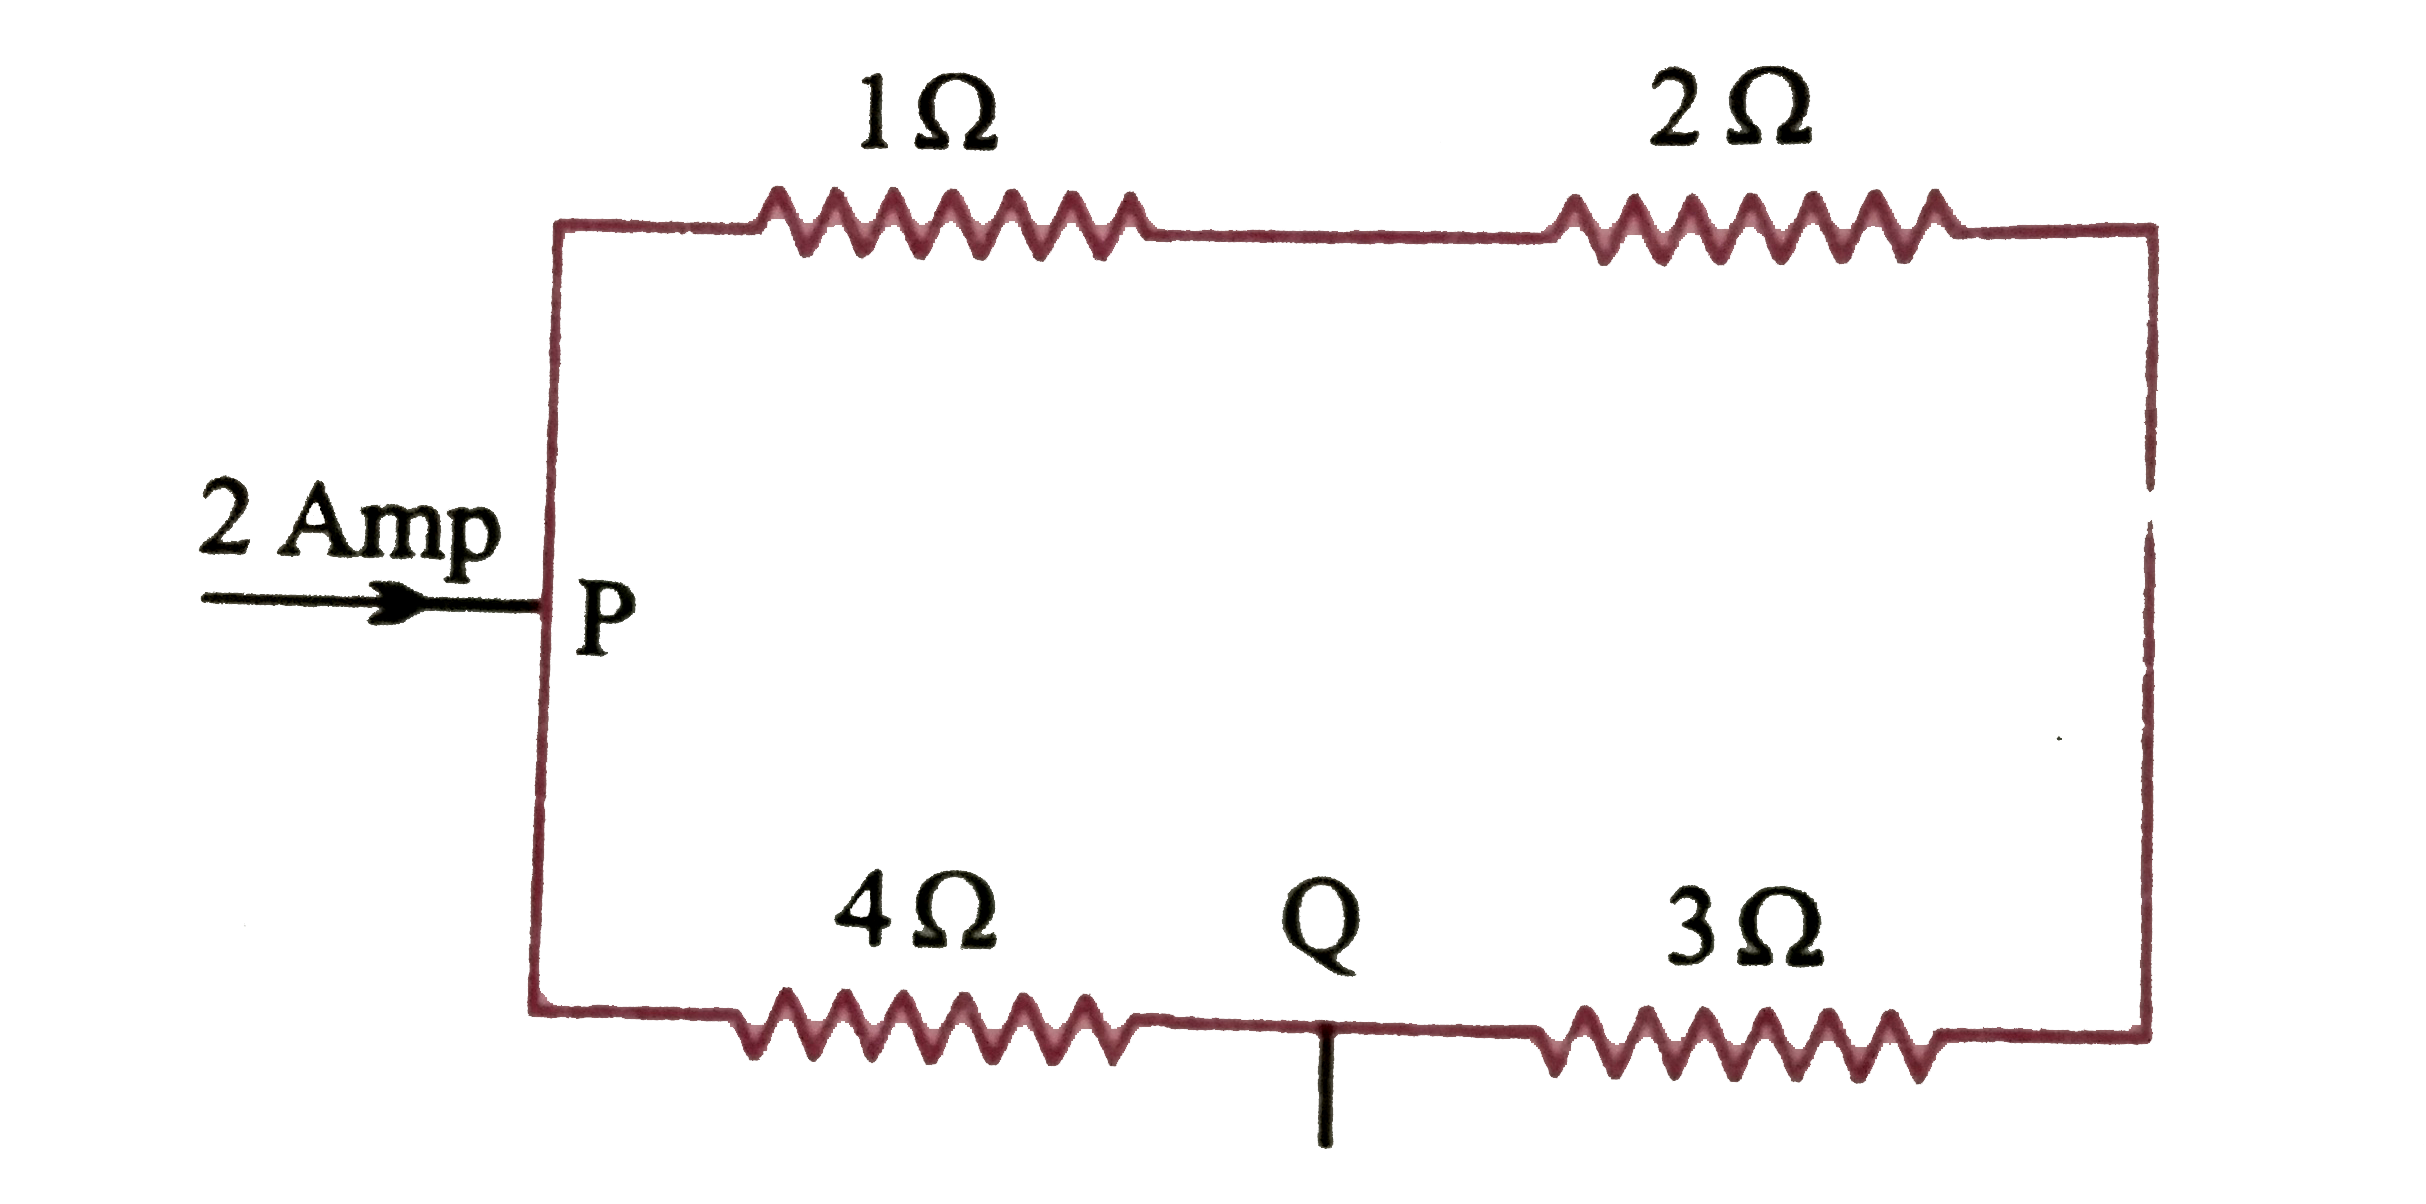 सलंगन चित्र  में किरचॉफ   के नियमो  का  उपयोग करते हुए P और Q  के बीच   ज्ञात कीजिए   तथा  बताइये  कि विभिन्न  प्रतिरोधों  में से कितनी विद्युत धारा  प्रवाहित होती है ?